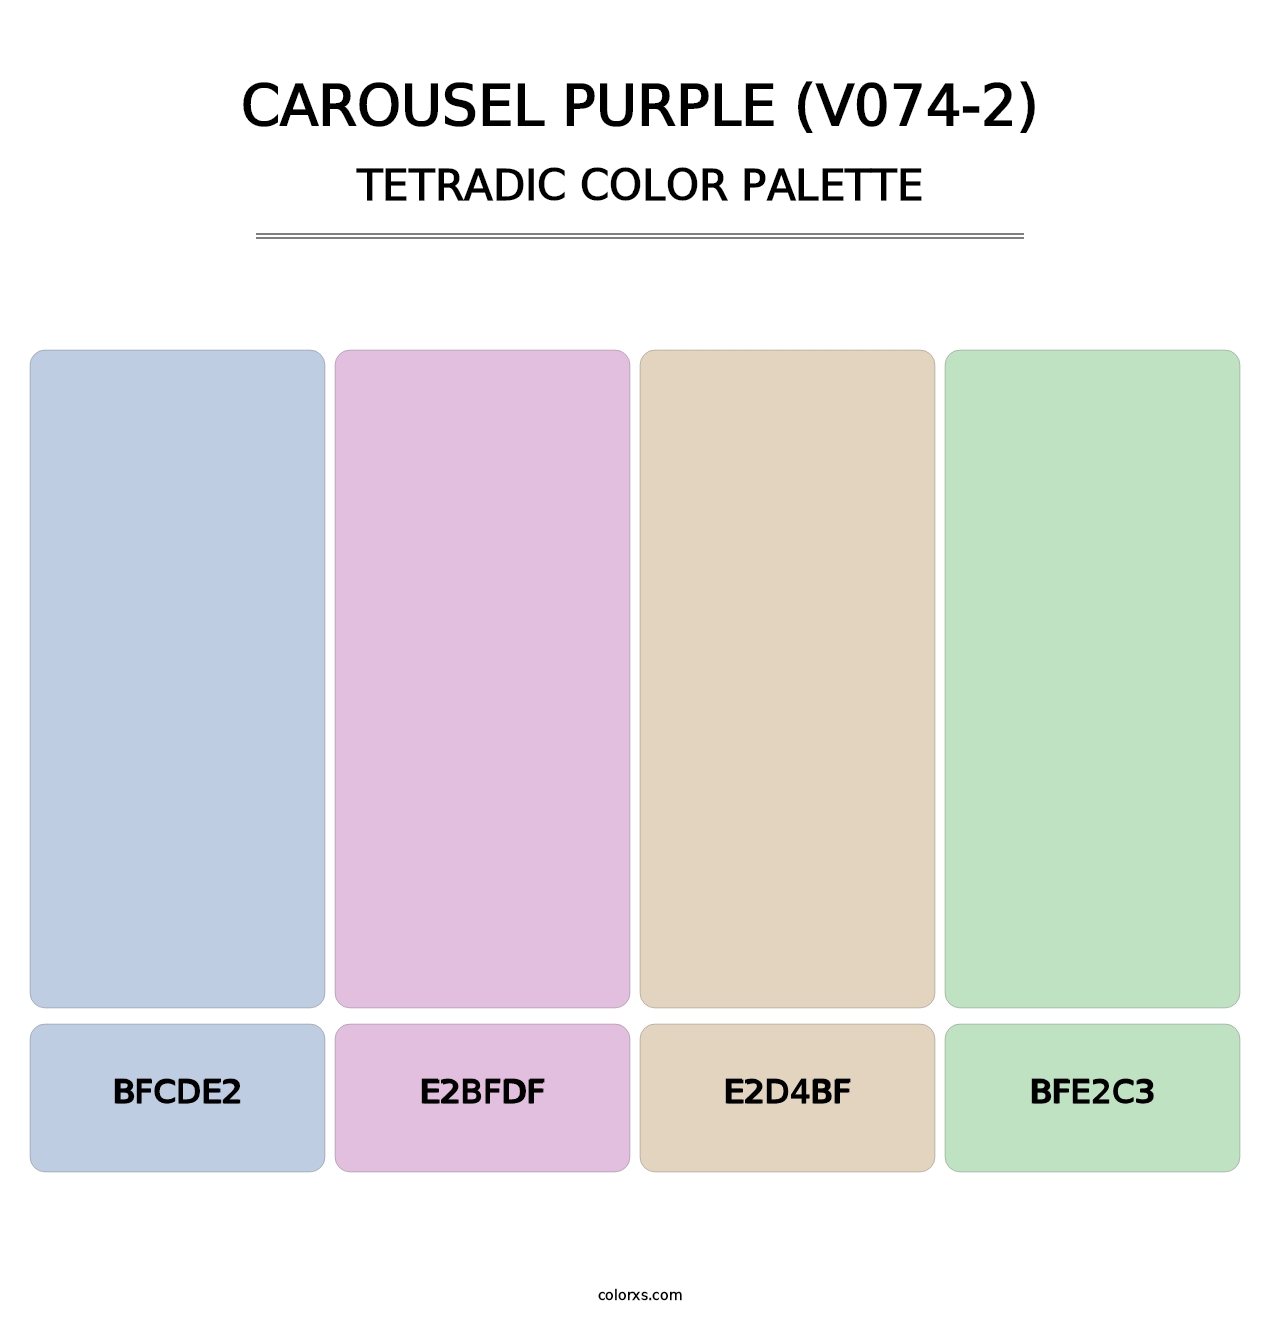 Carousel Purple (V074-2) - Tetradic Color Palette